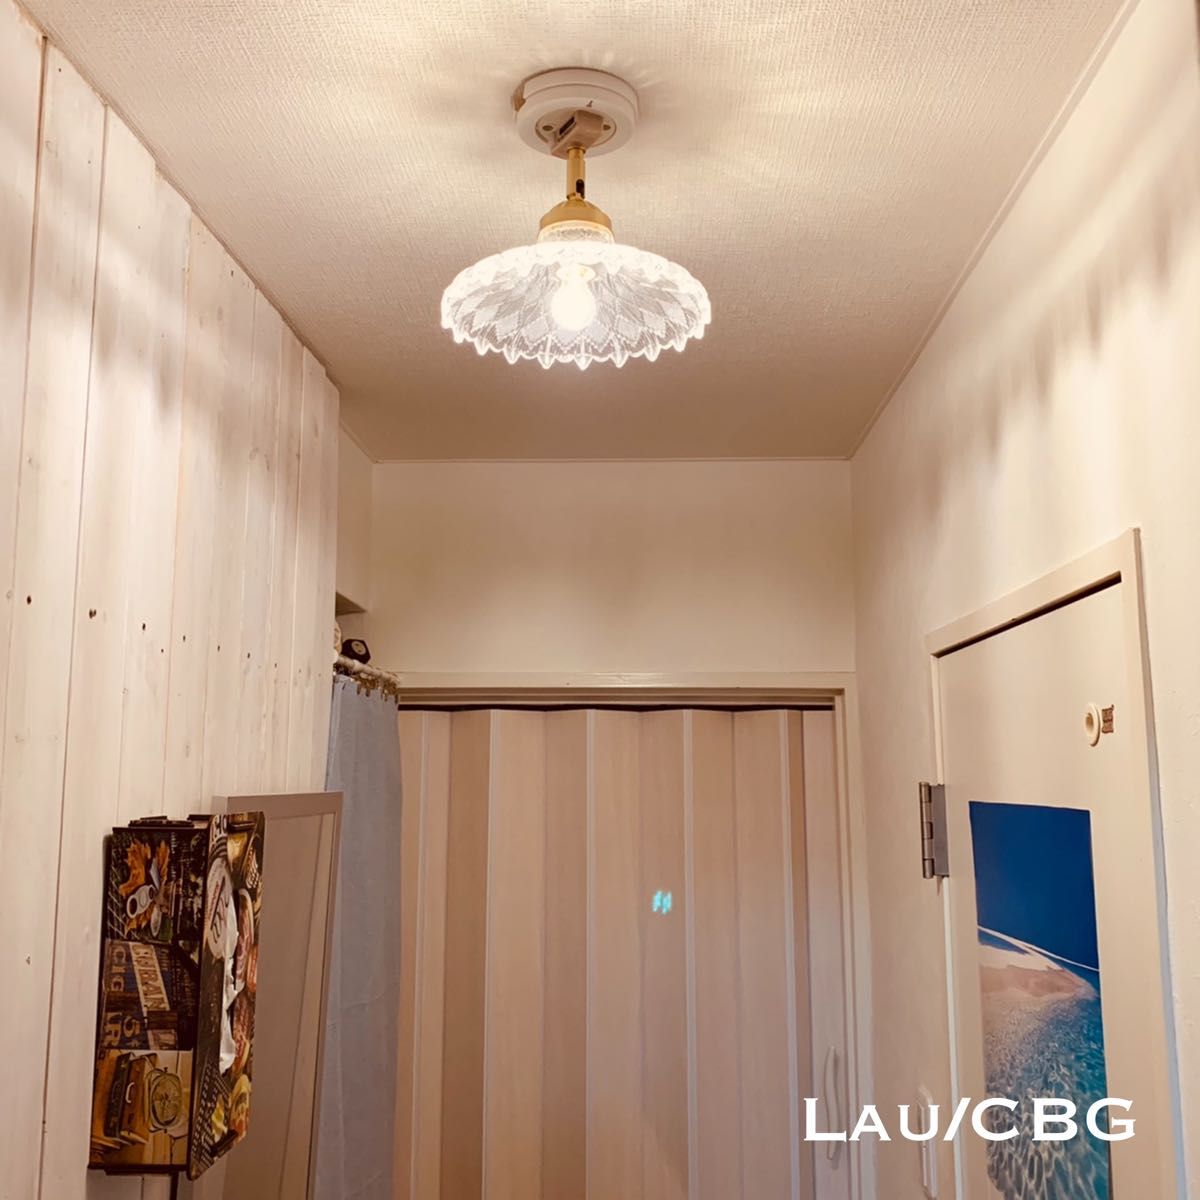 天井照明 Lau/CBG シーリングライト ガラス製 ランプシェード E17磁器ソケット 角度自在器付真鋳器具